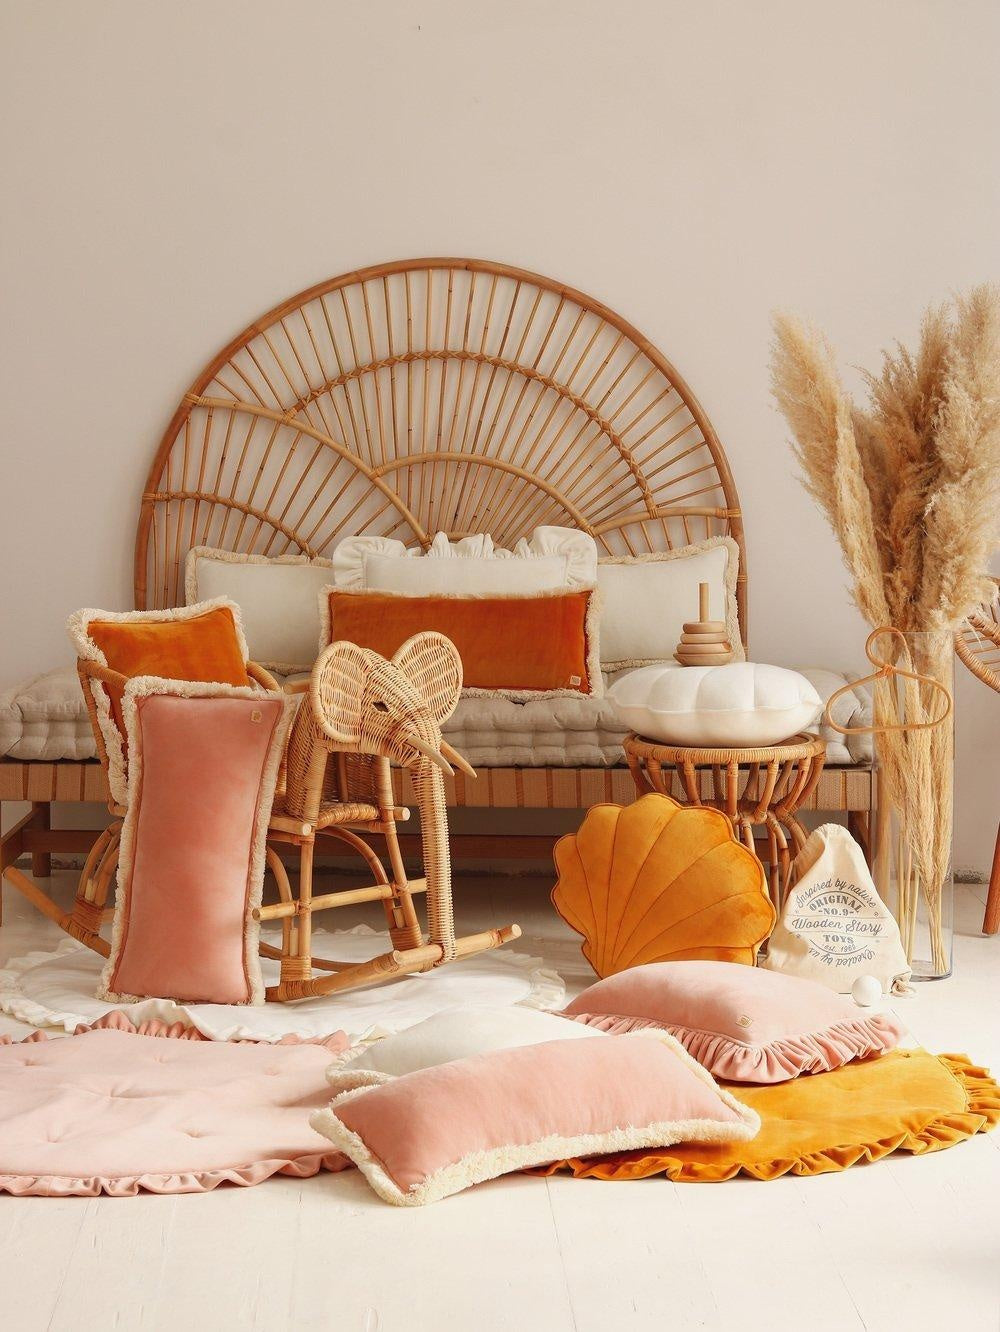 Shell Pillow Soft Velvet “White” | Kids Room & Nursery Decor